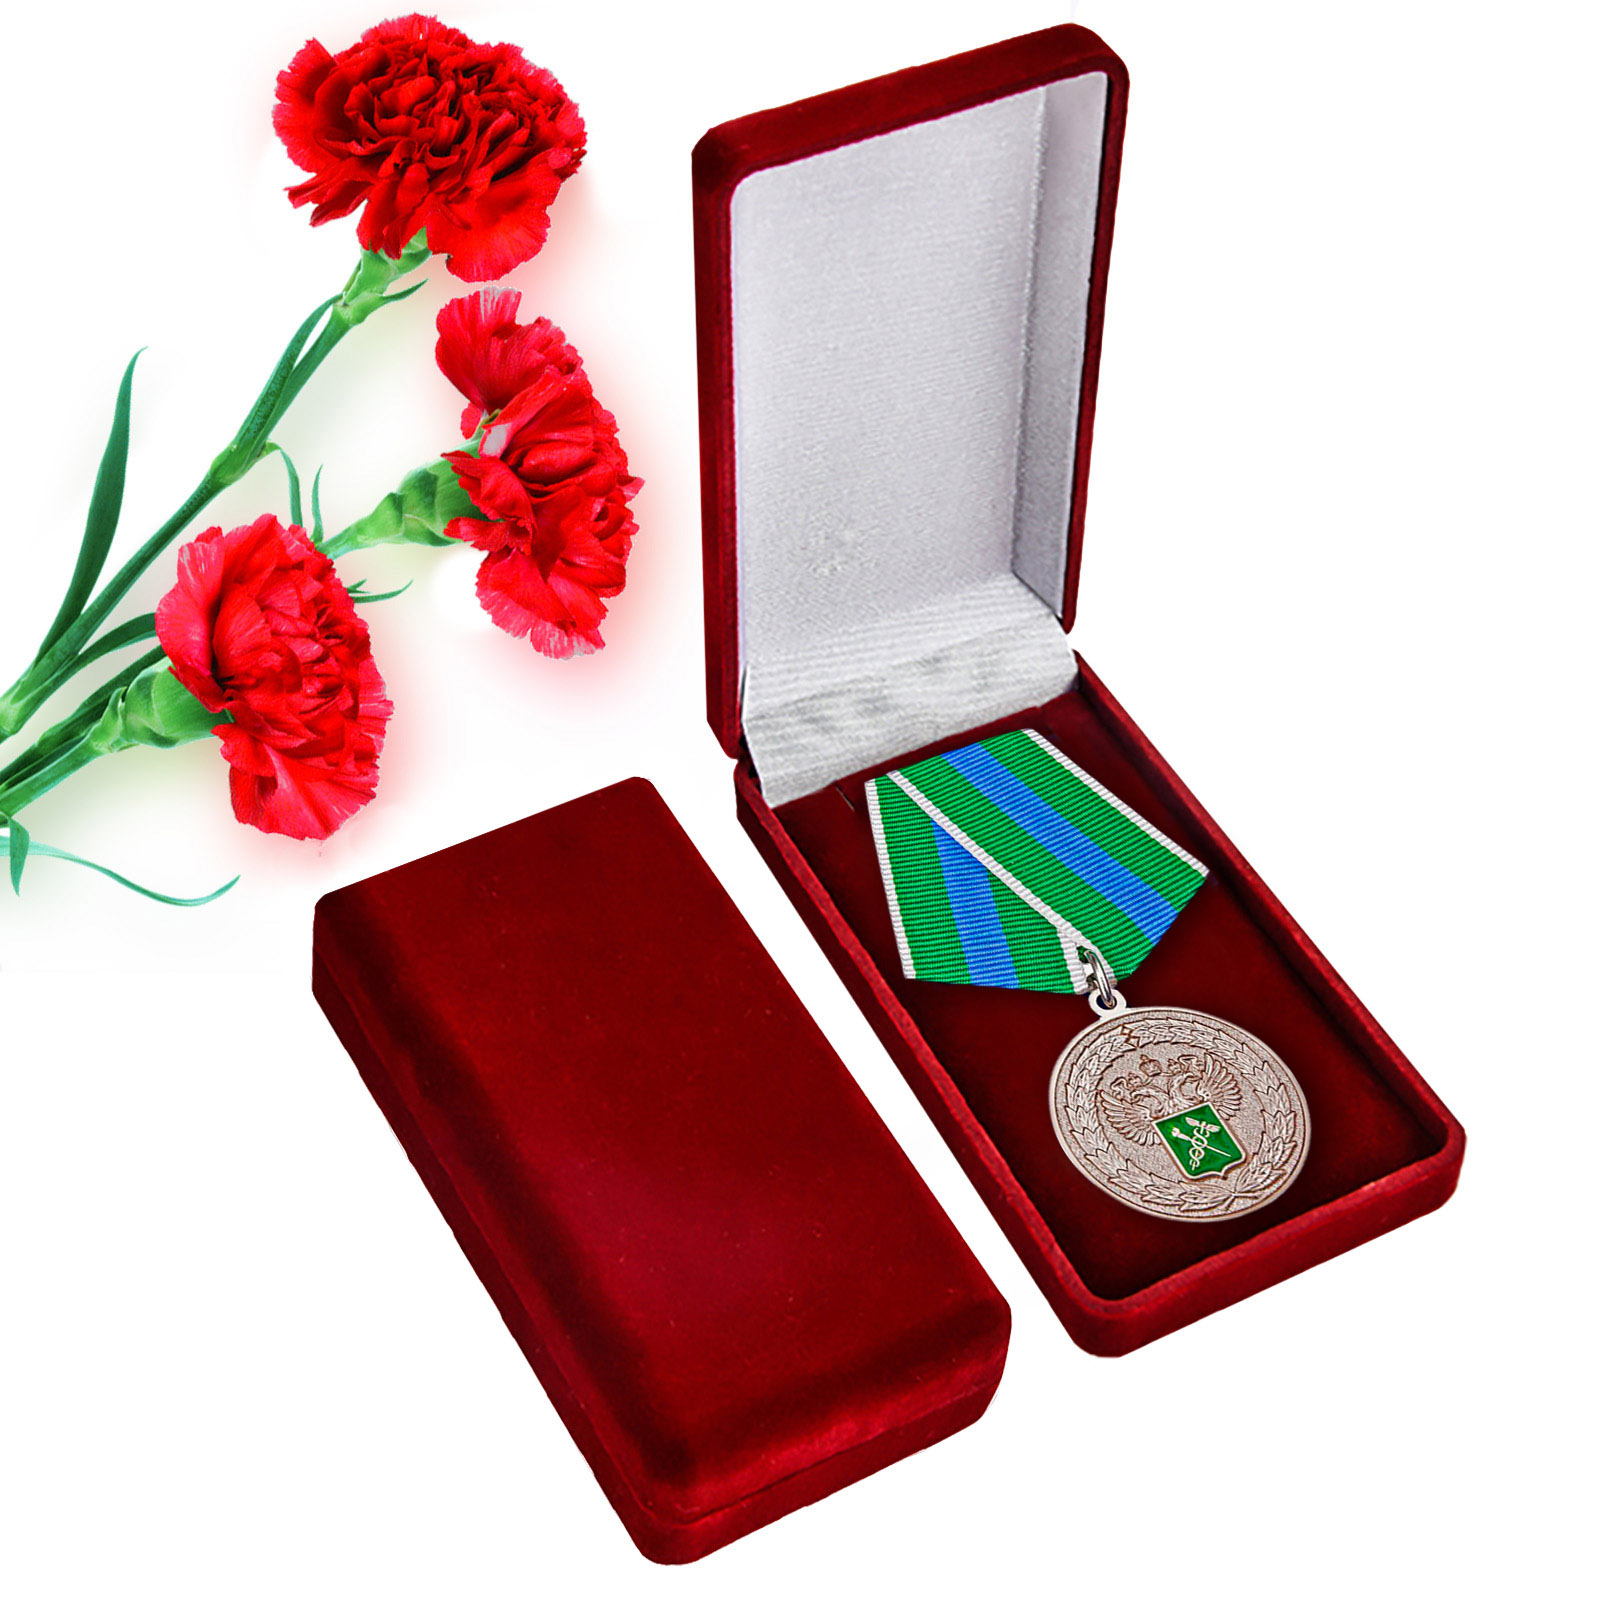 Купить ведомственная медаль "За укрепление таможенного содружества" в подарок